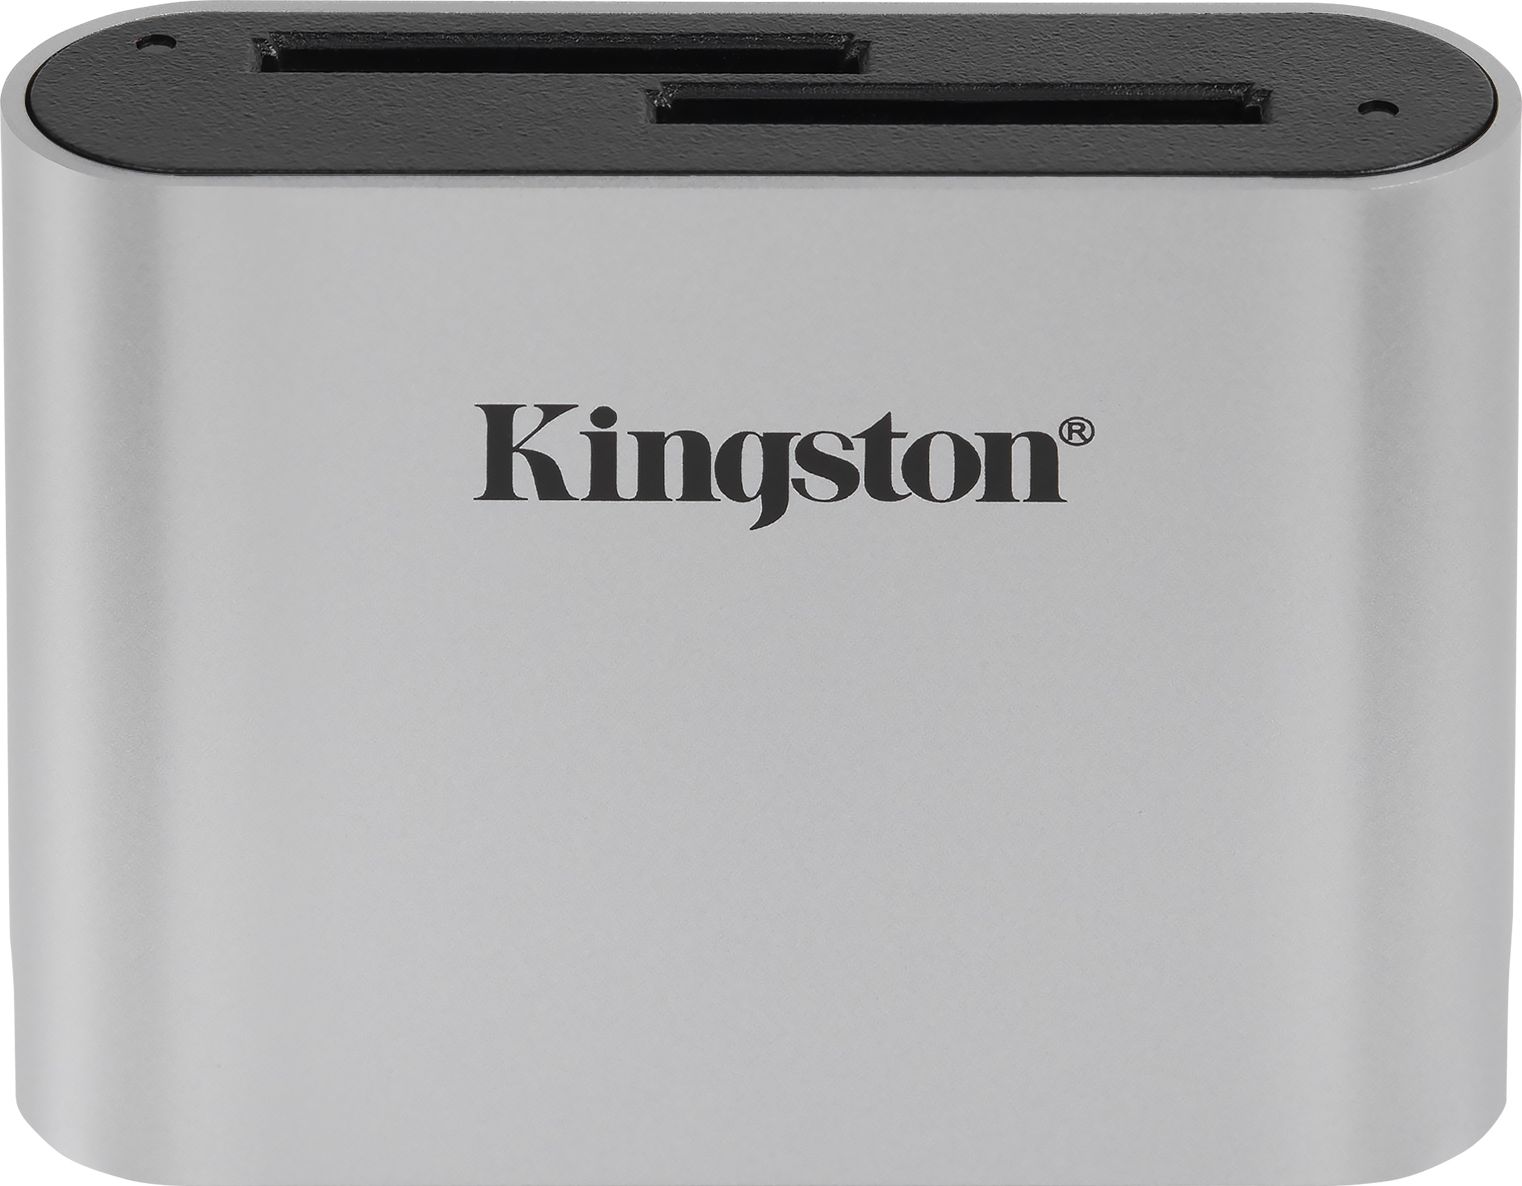 KINGSTON USB 3.2 Gen1 SDHC Card Reader karšu lasītājs